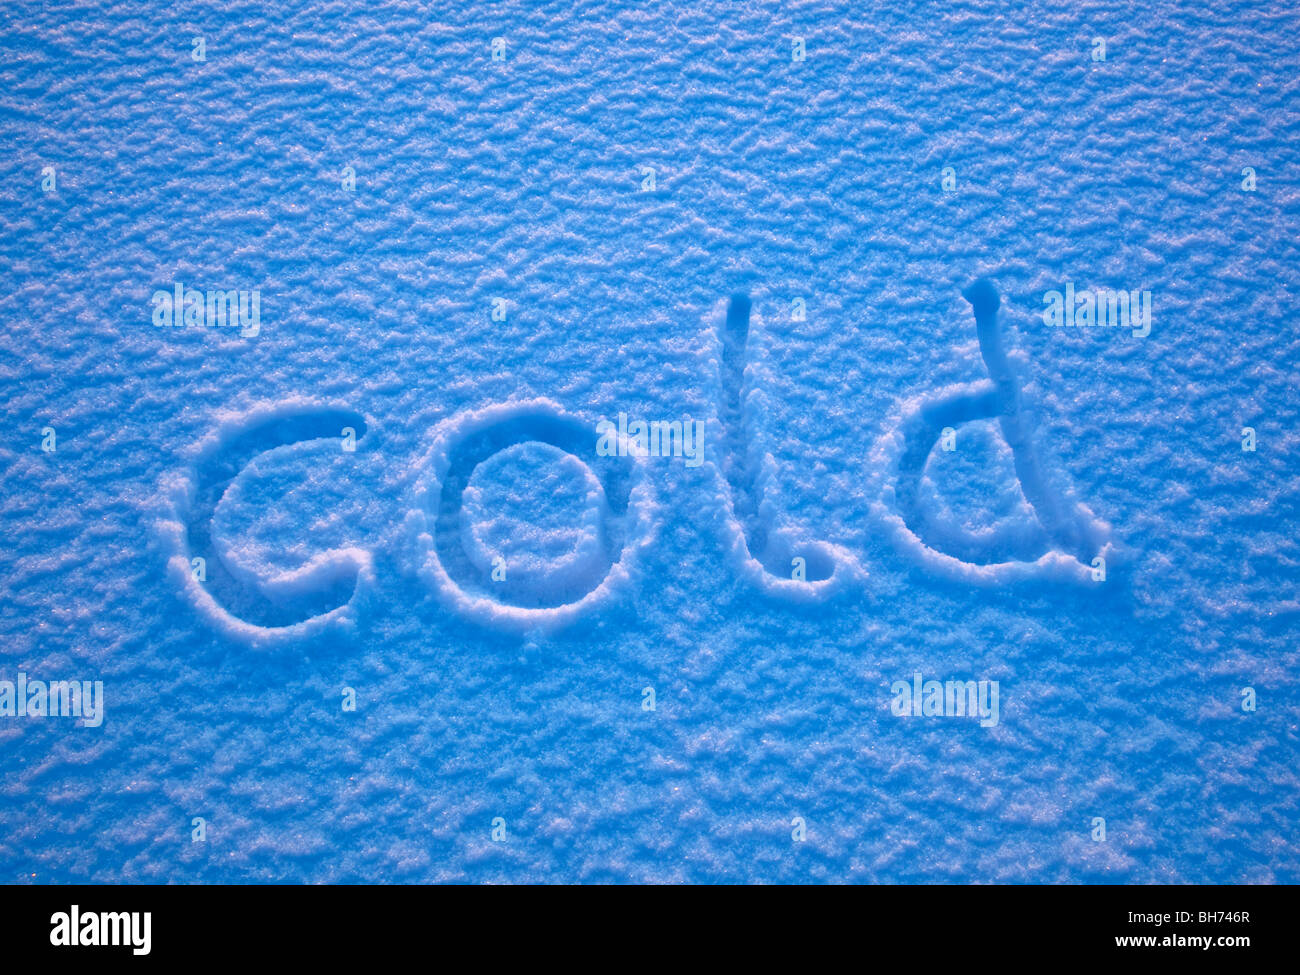 Das Wort "kalt" dargelegt in den Schnee. Stockfoto